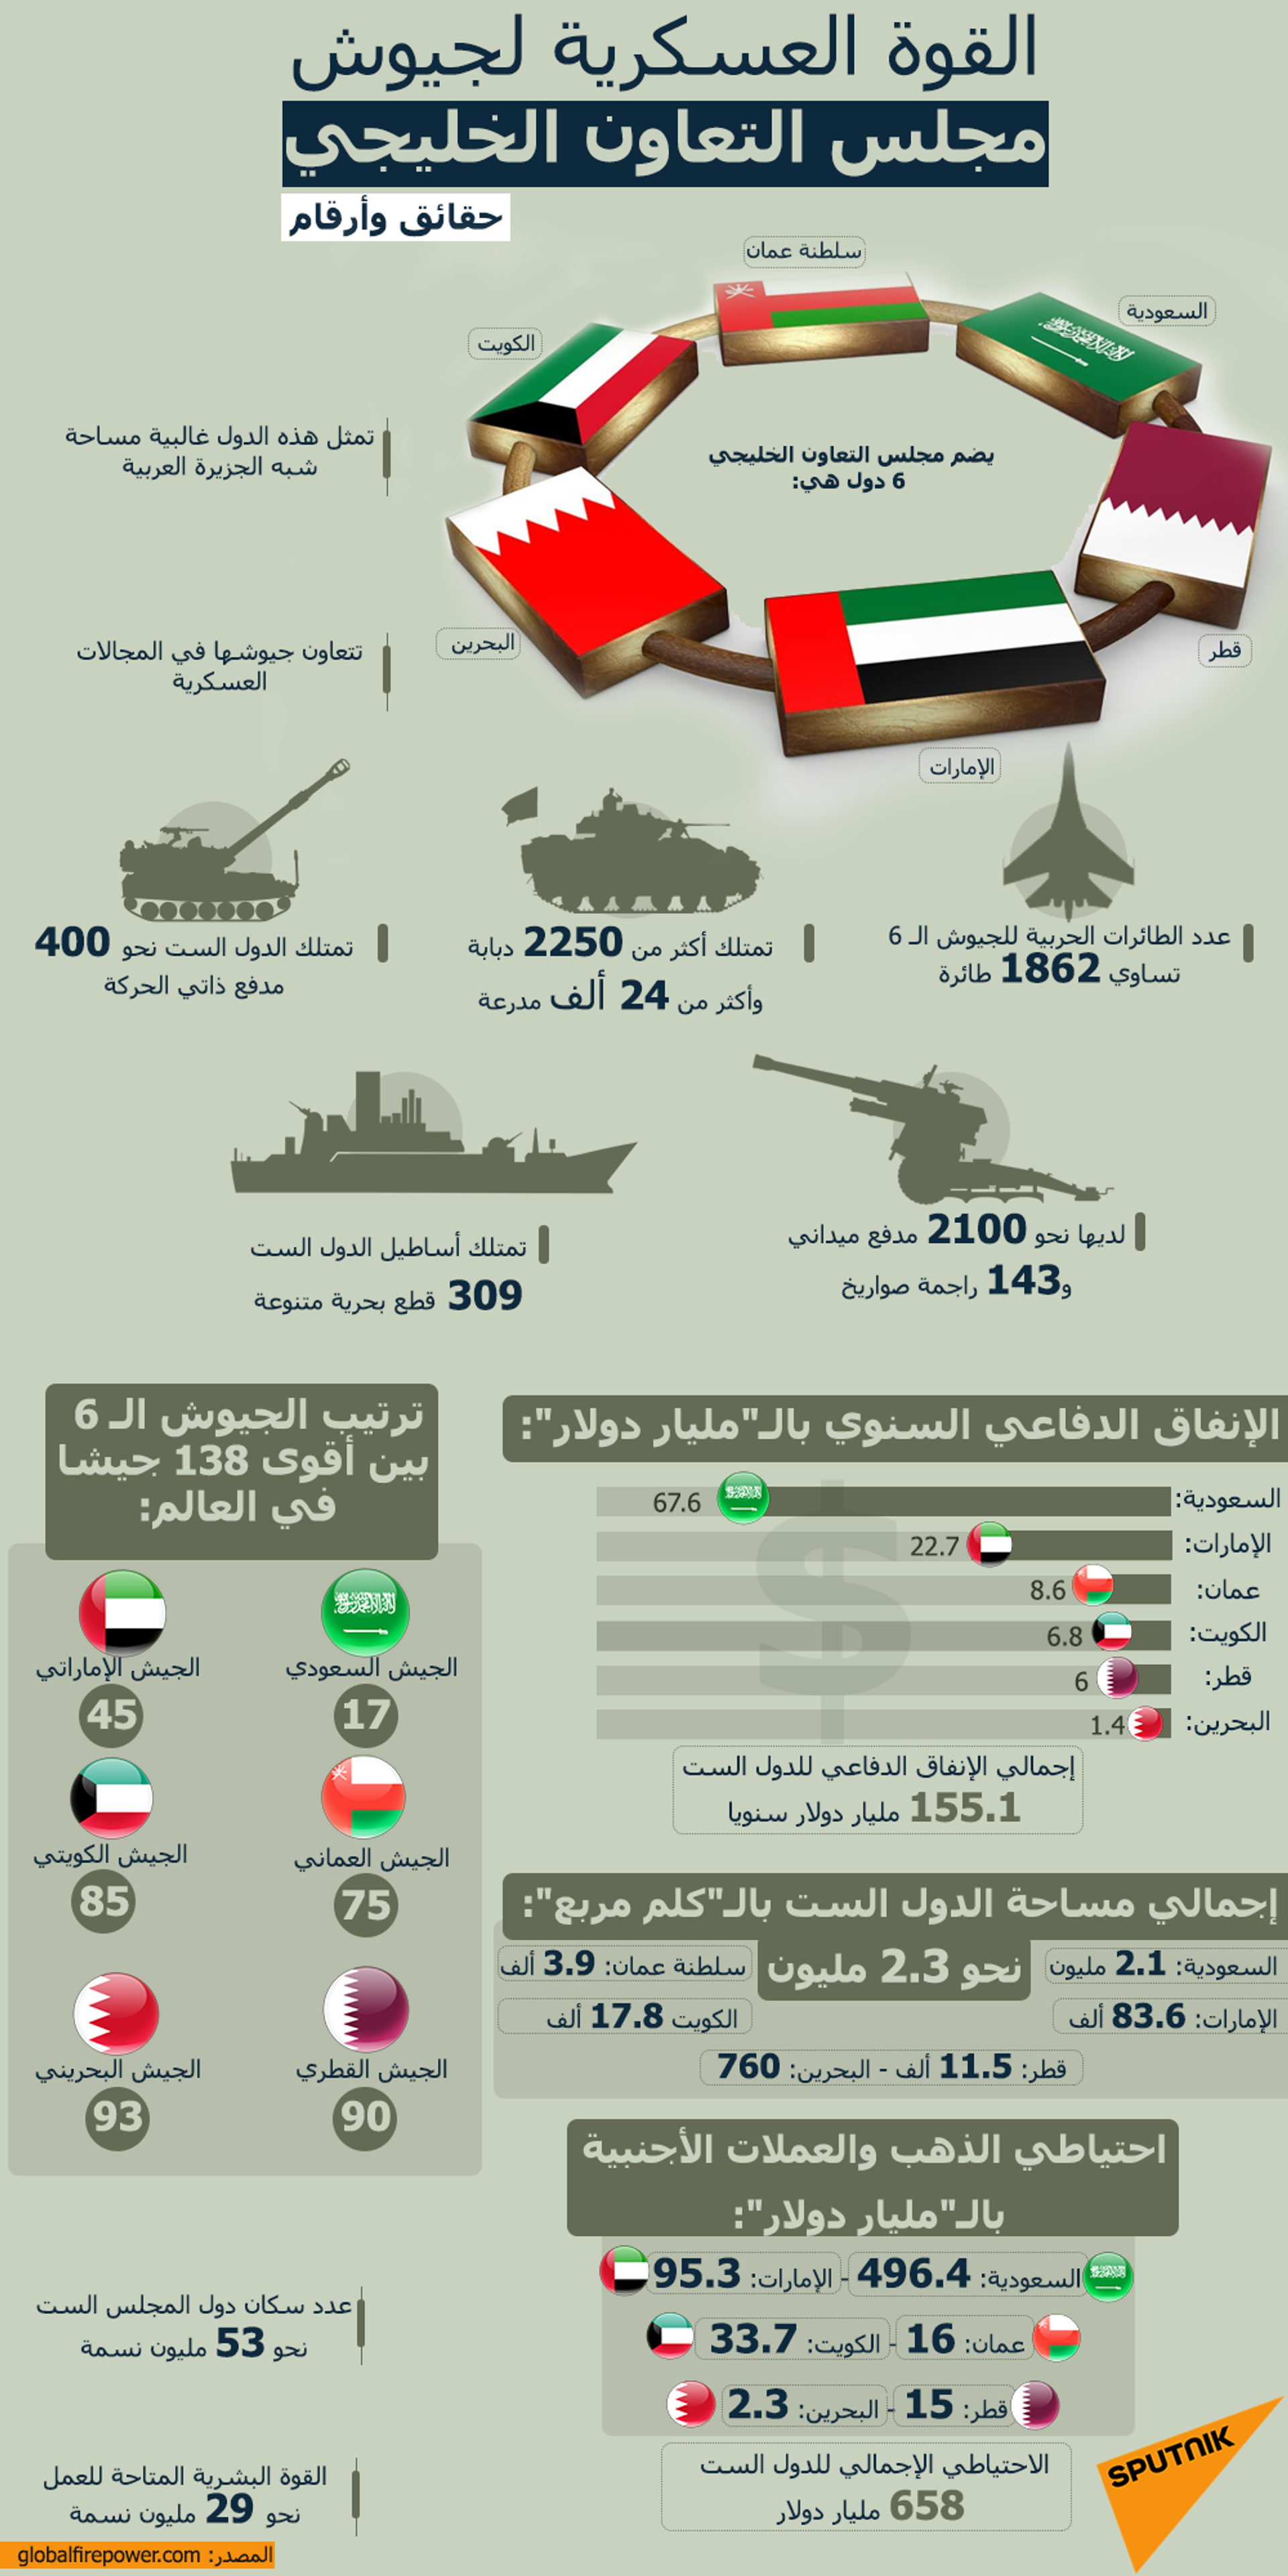 القوة العسكرية لجيوش مجلس التعاون الخليجي… حقائق وأرقام - سبوتنيك عربي, 1920, 23.11.2021